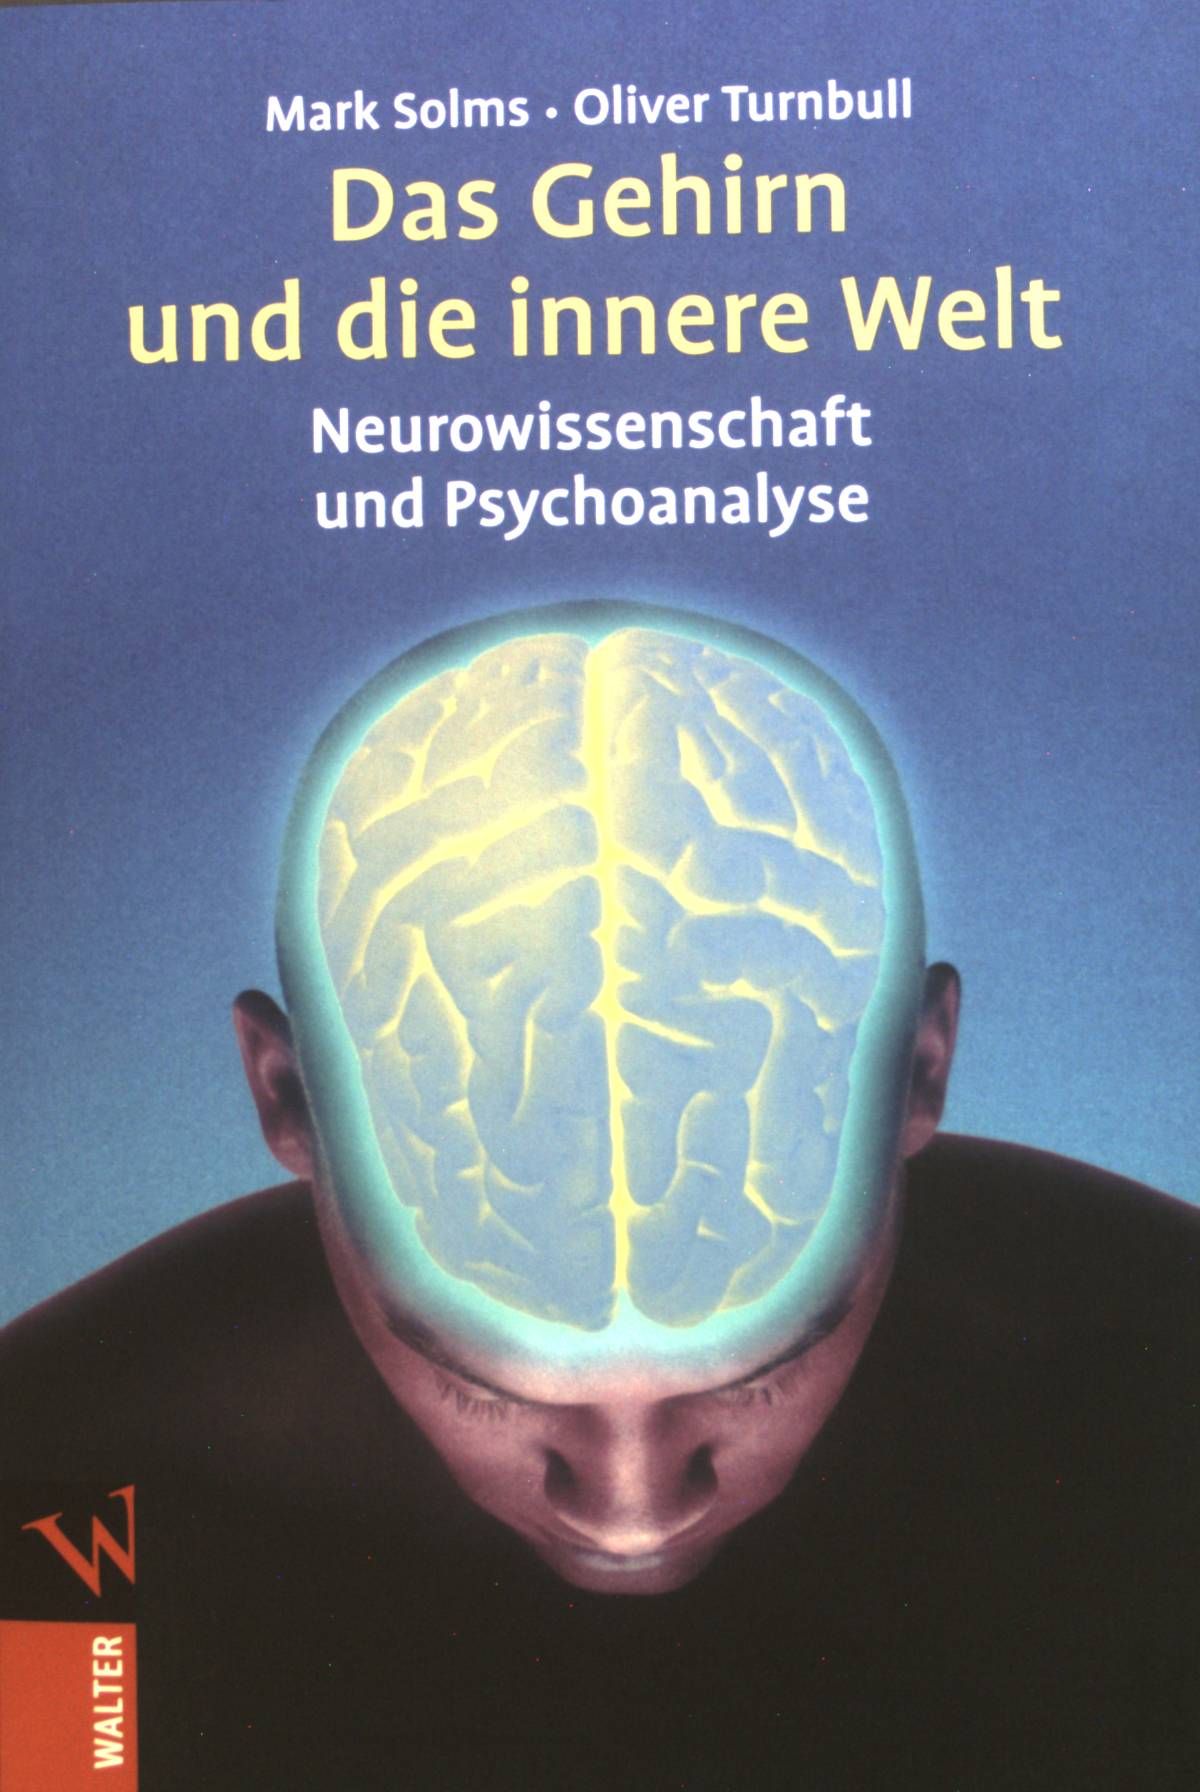 Das Gehirn und die innere Welt : Neurowissenschaft und Psychoanalyse. - Solms, Mark und Oliver Turnbull